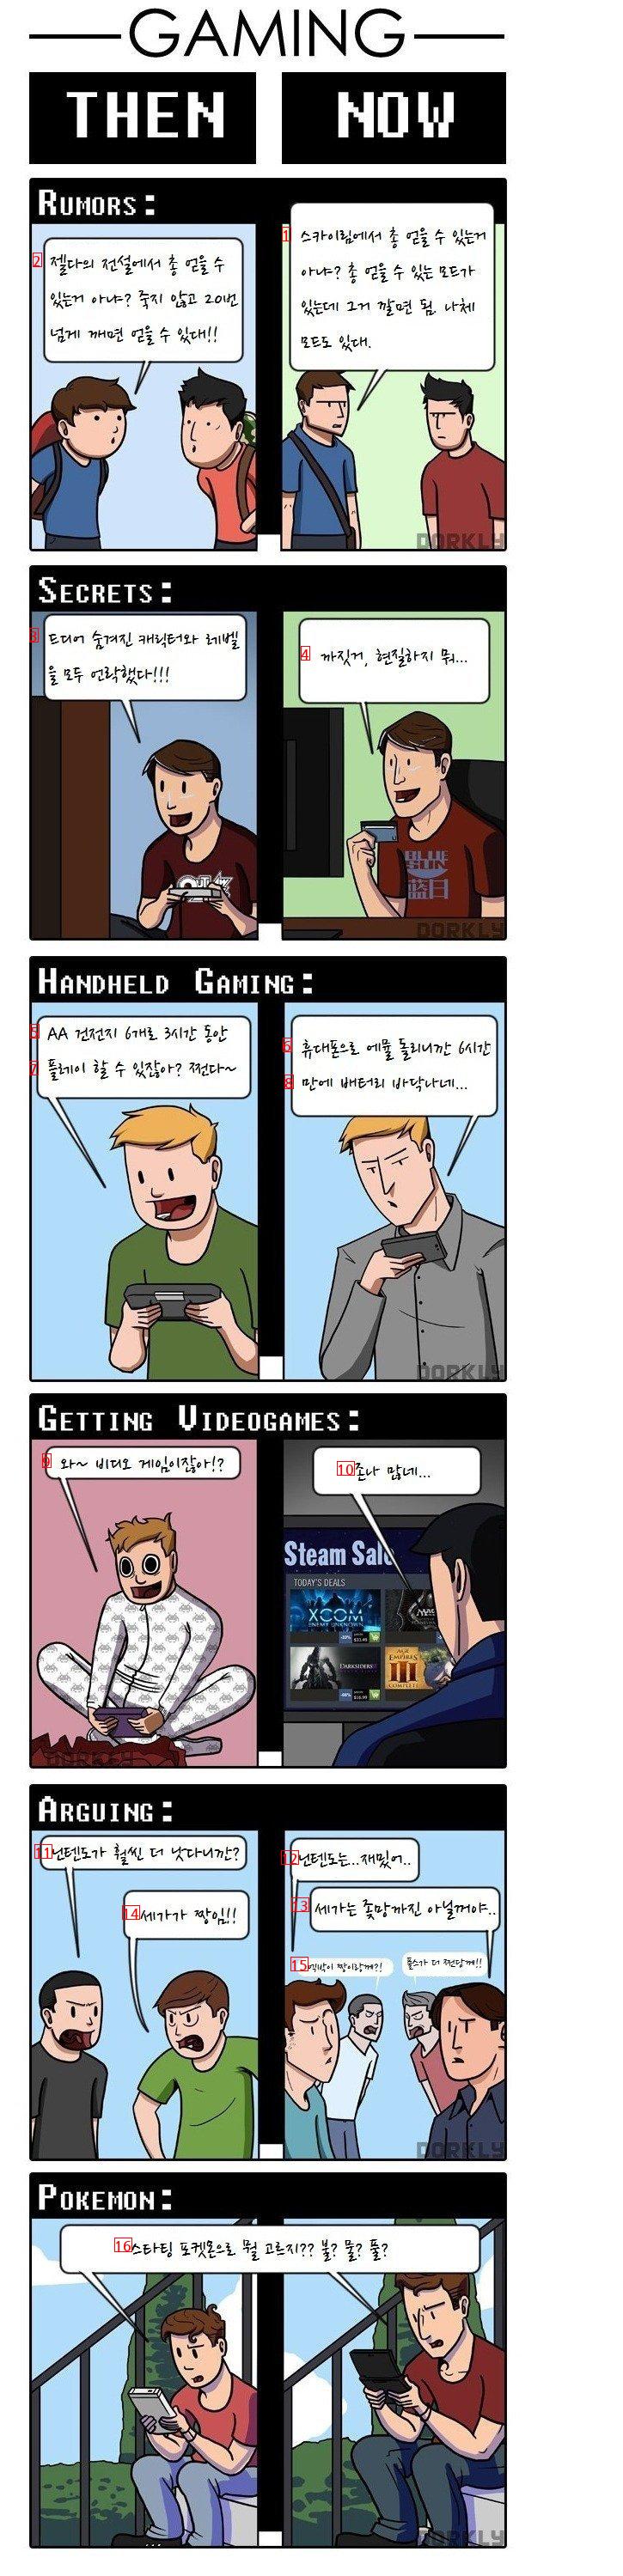 ビデオゲームの過去と現在